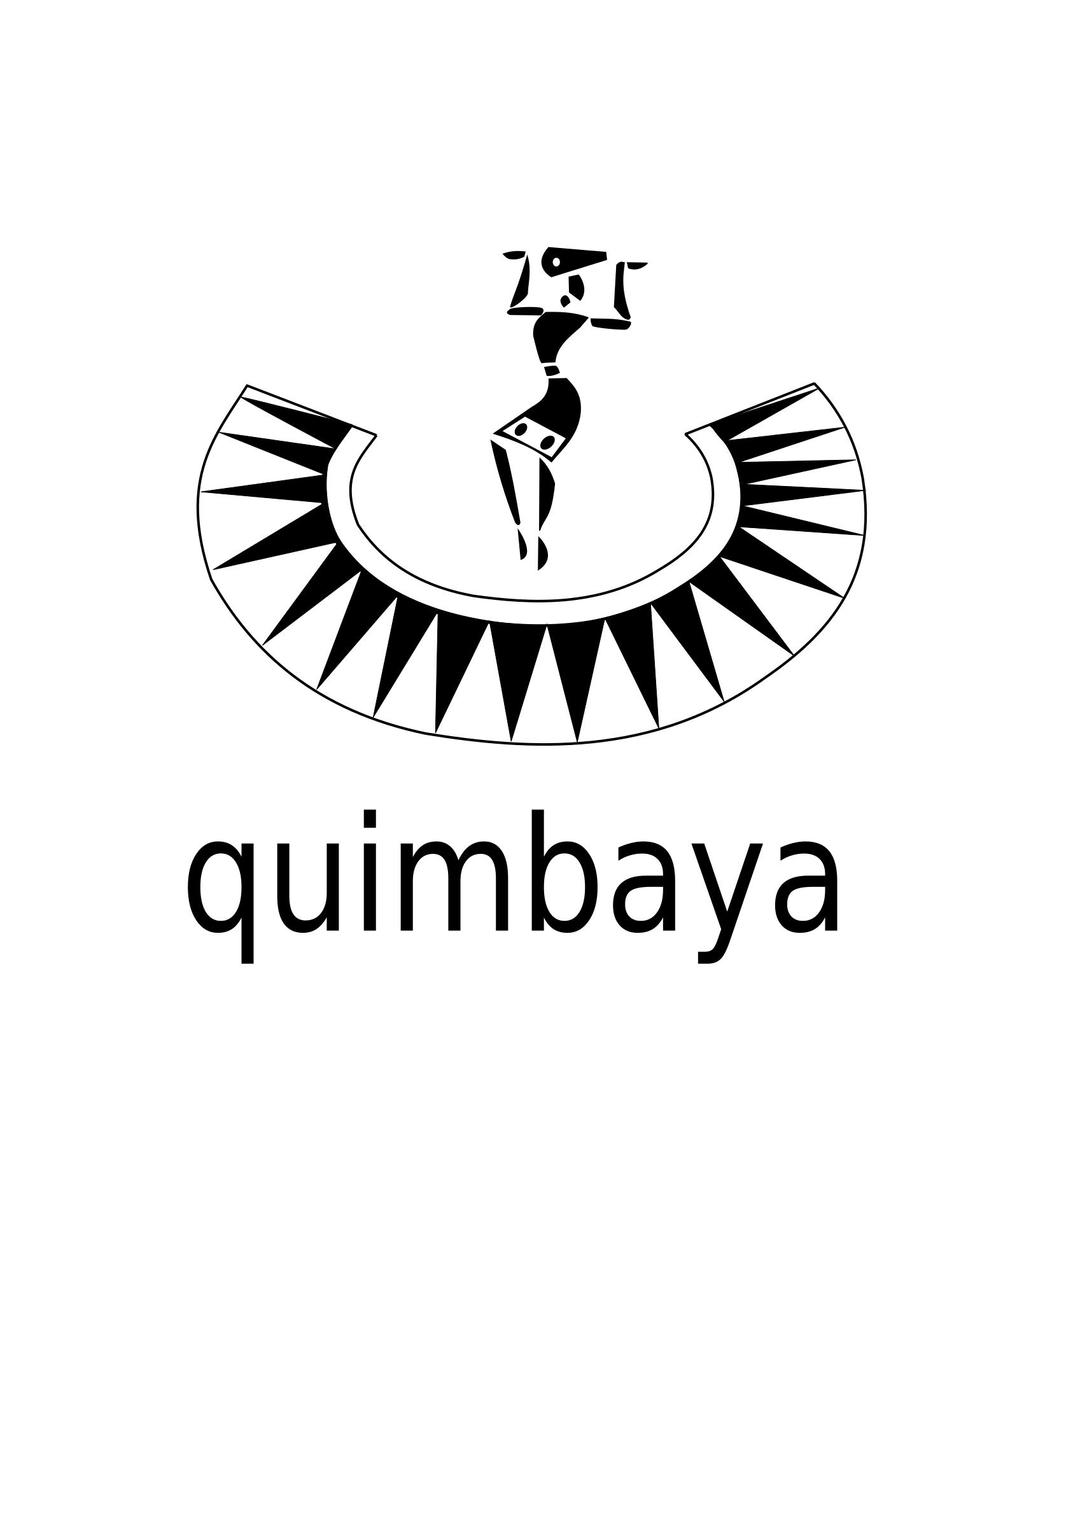 Cultura quimbaya de Colombia png transparent